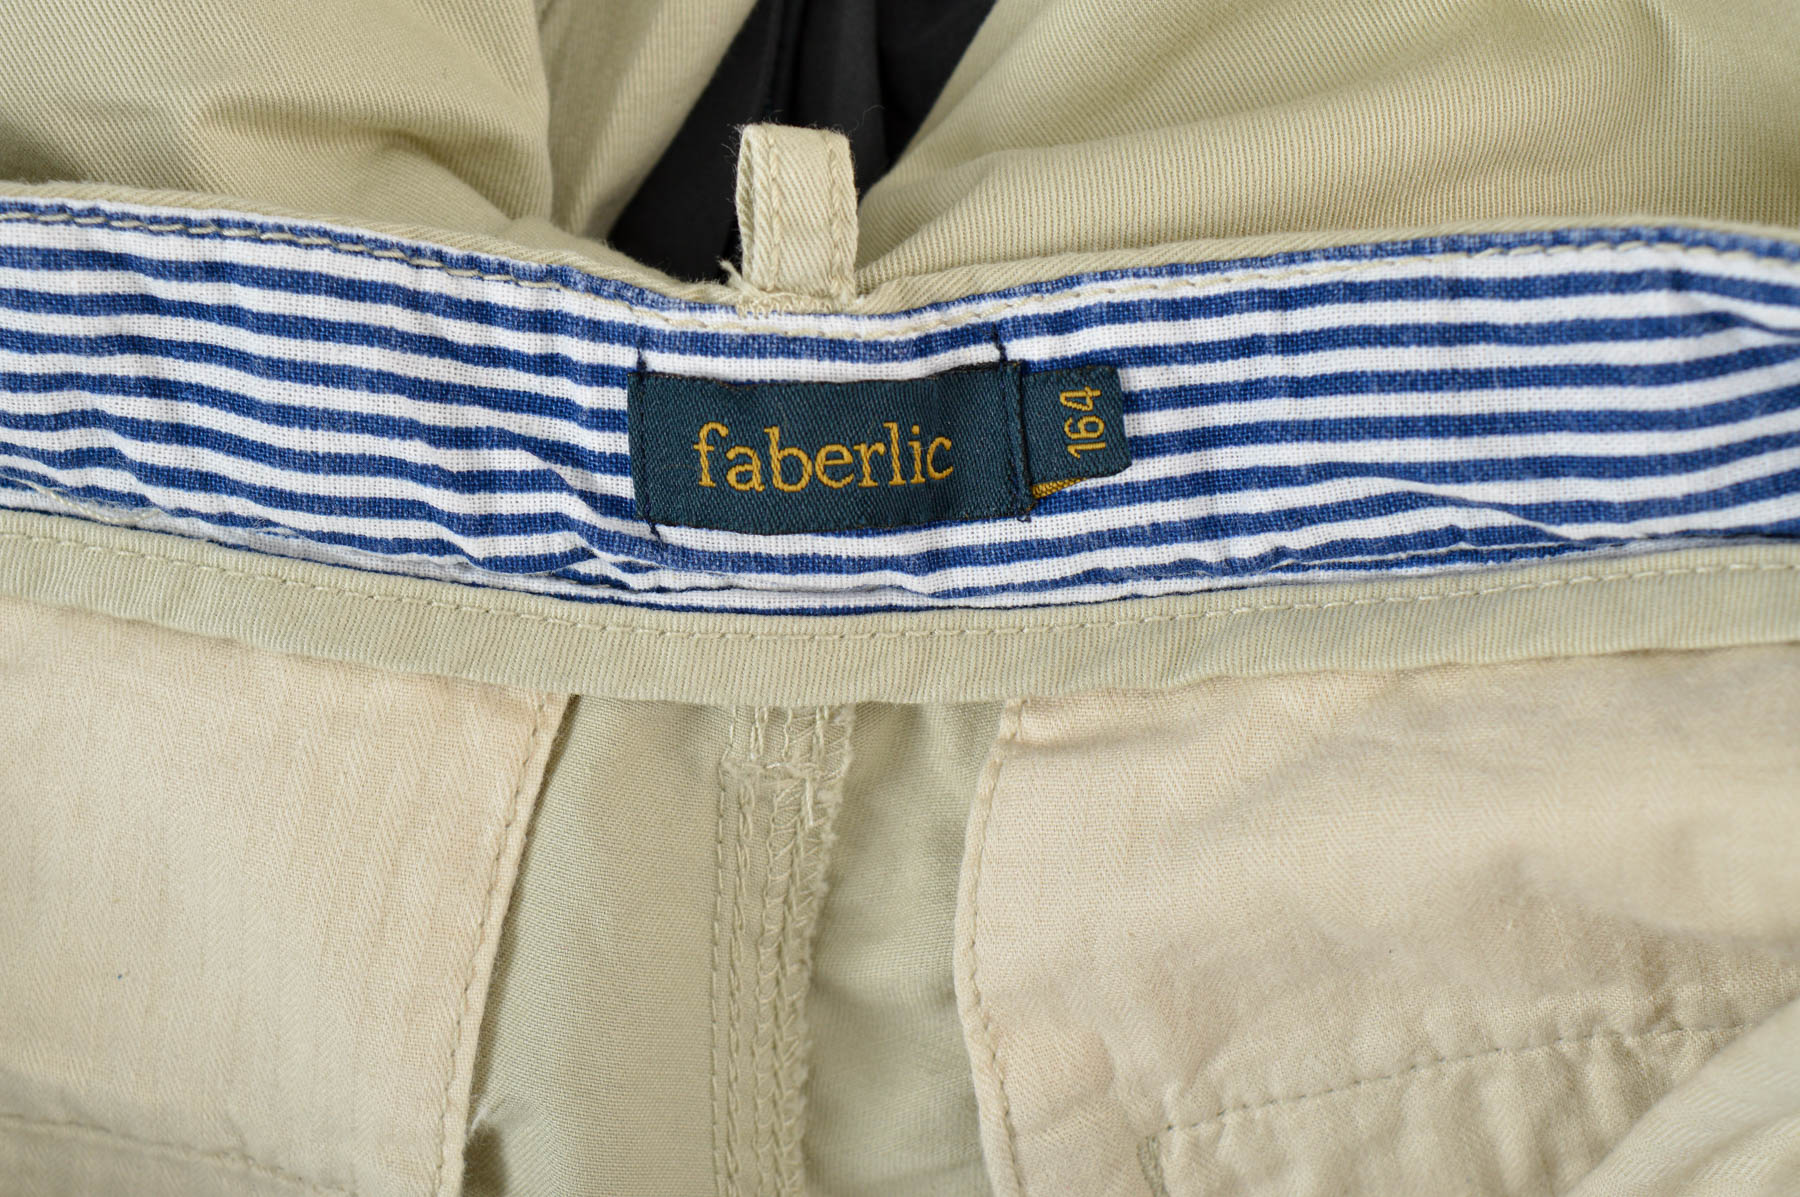 Pantalon pentru băiat - Faberlic - 2